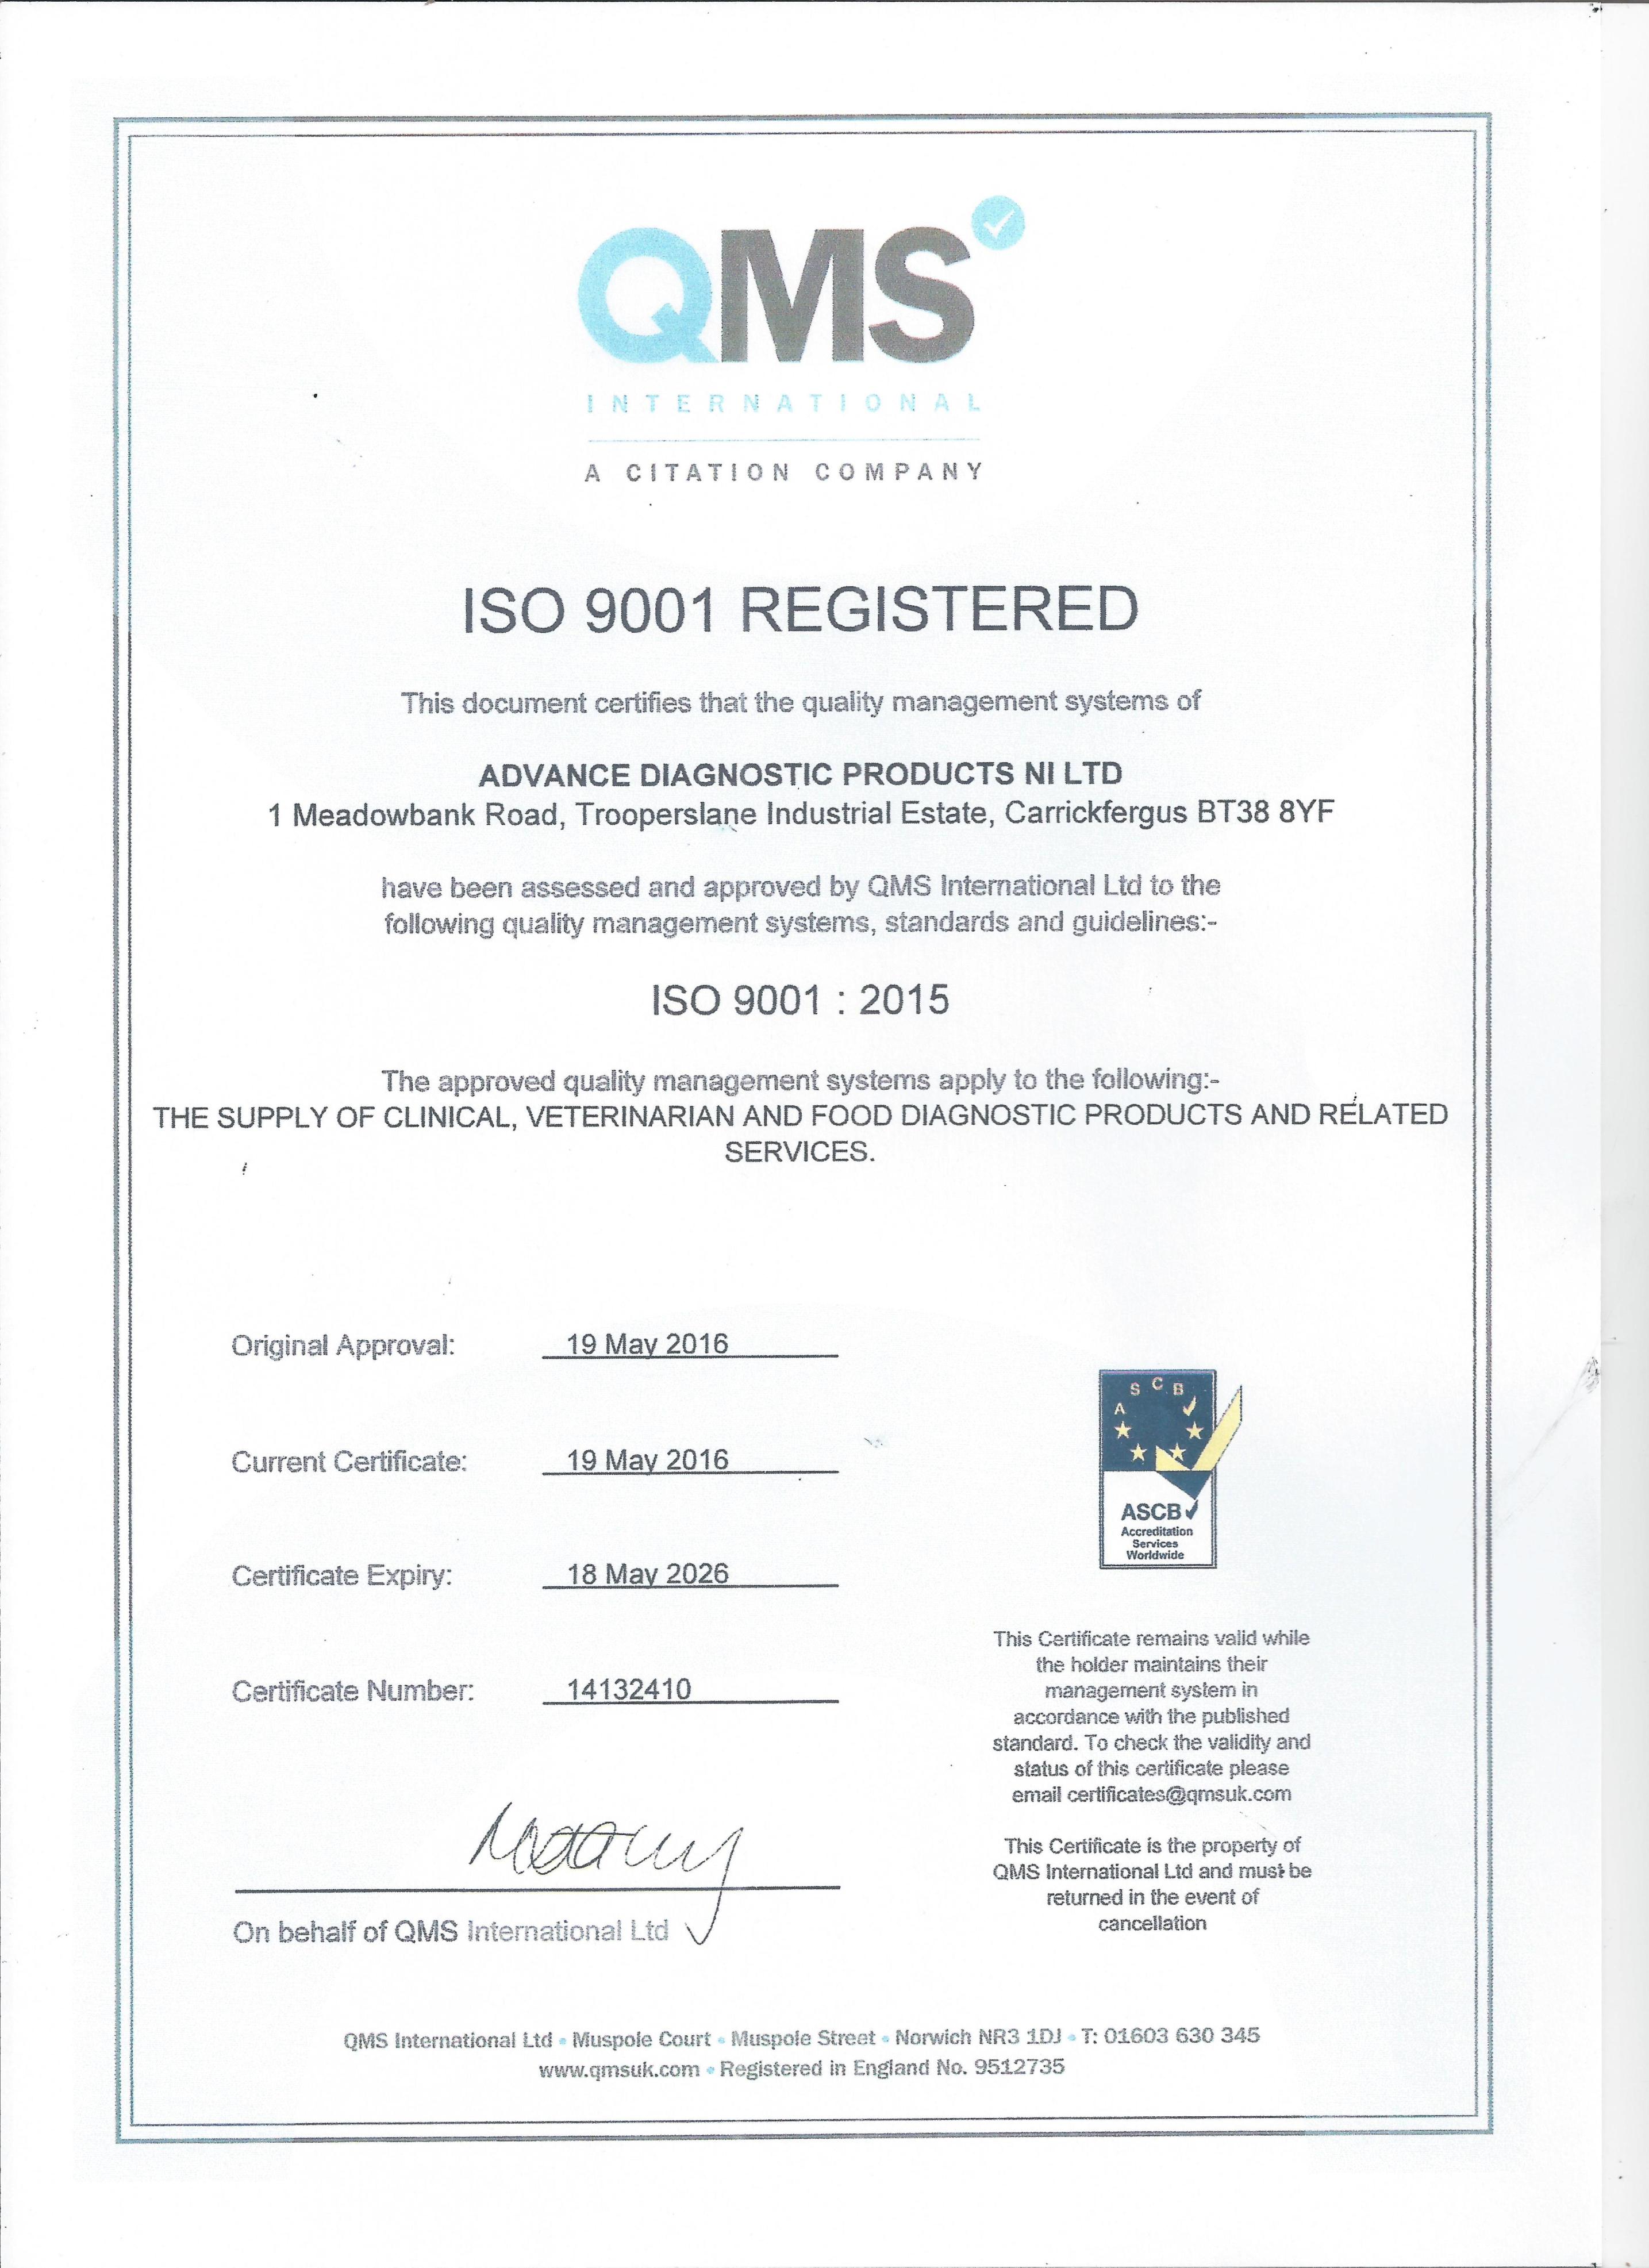 ISO 9001:2015 AWARDED